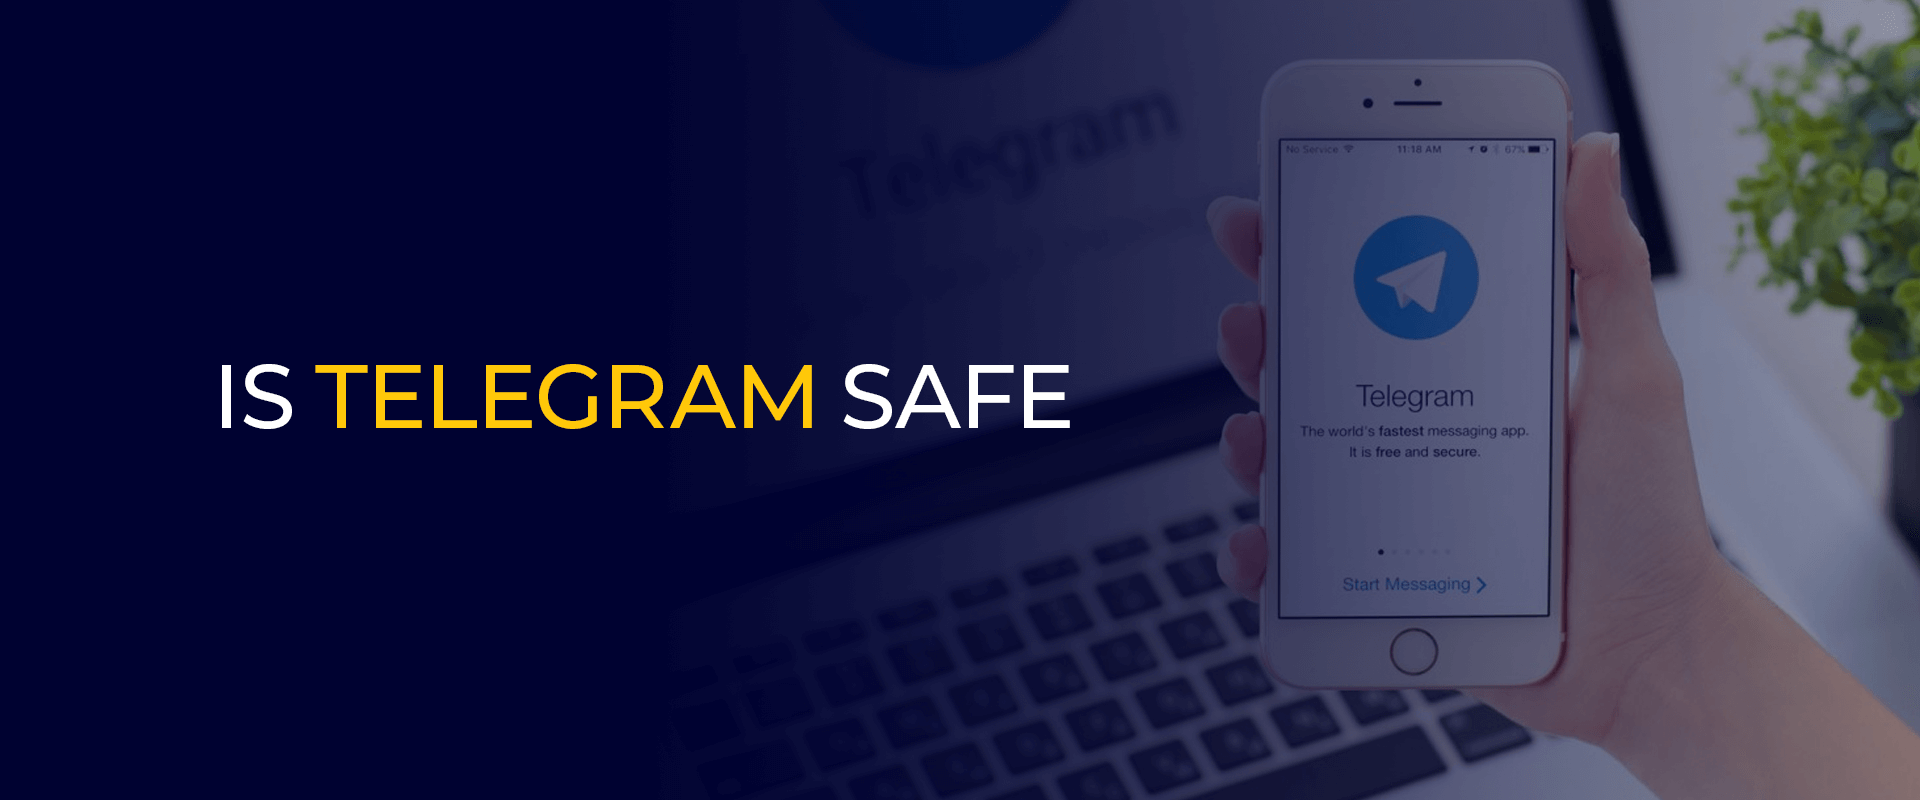 Apakah telegram aman